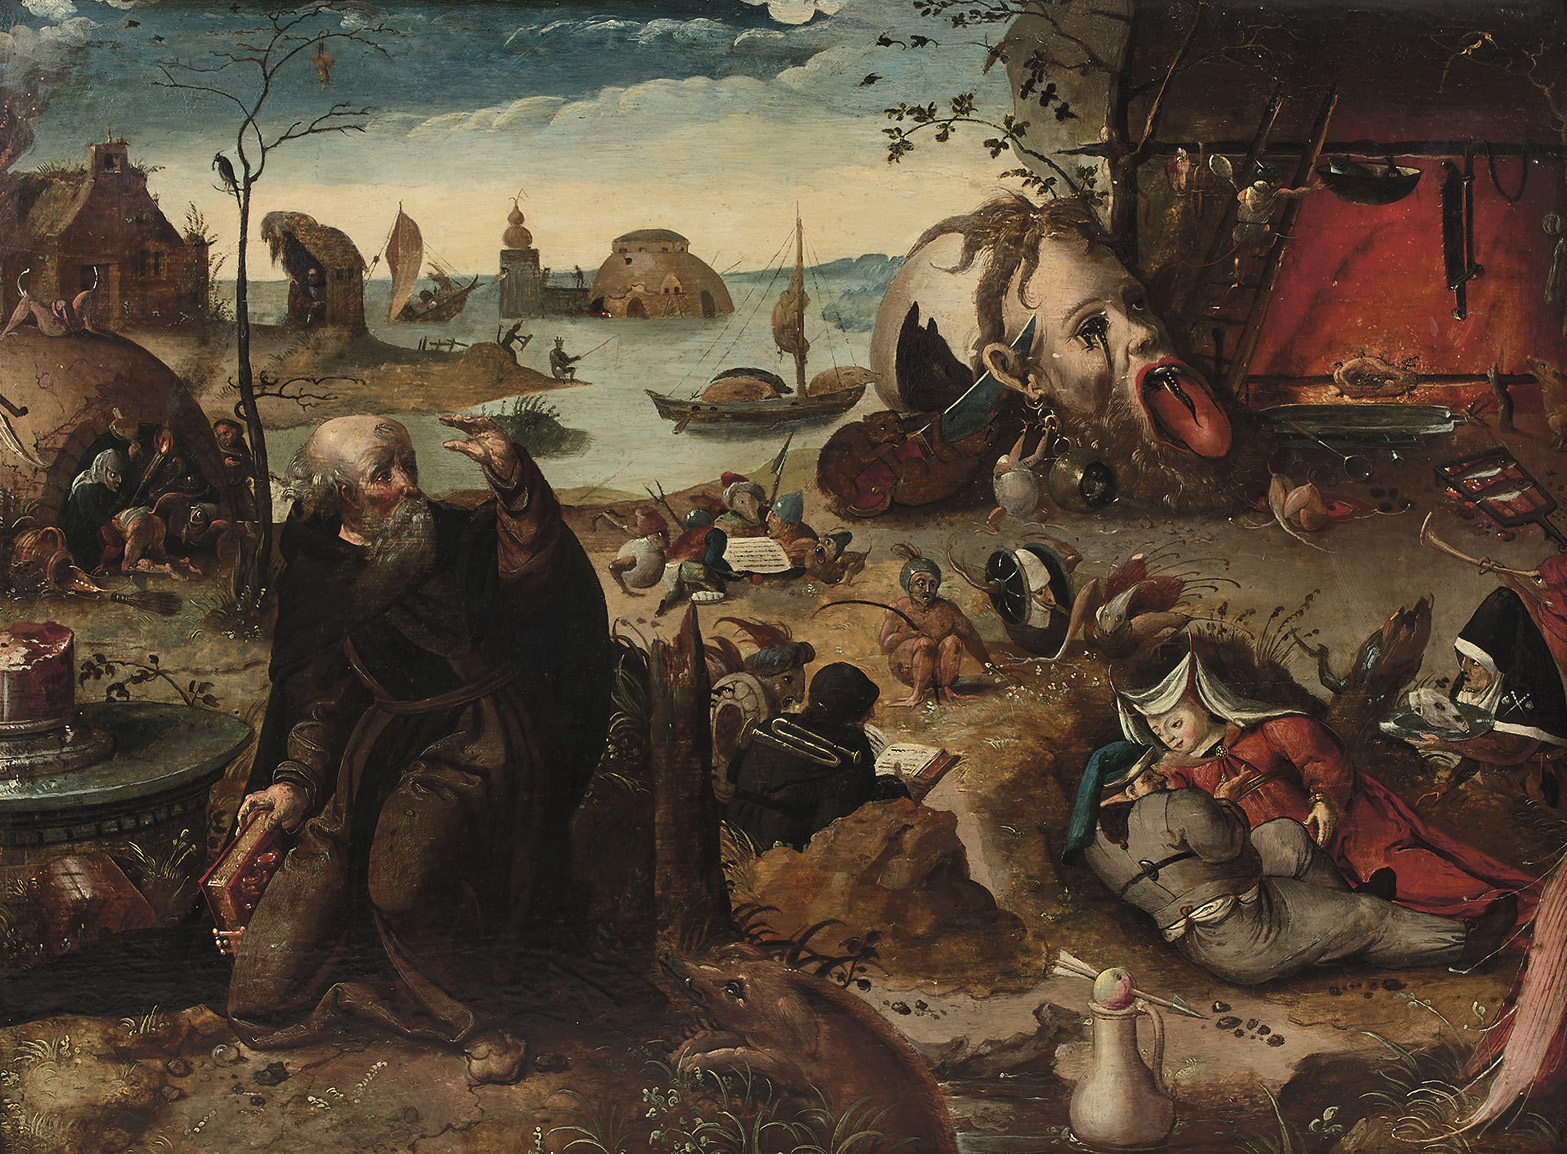 Les tableaux anciens se distinguaient avec La Tentation de saint Antoine (41,8 x 57,8 cm), panneau non daté mais attribué au groupe Mandyn